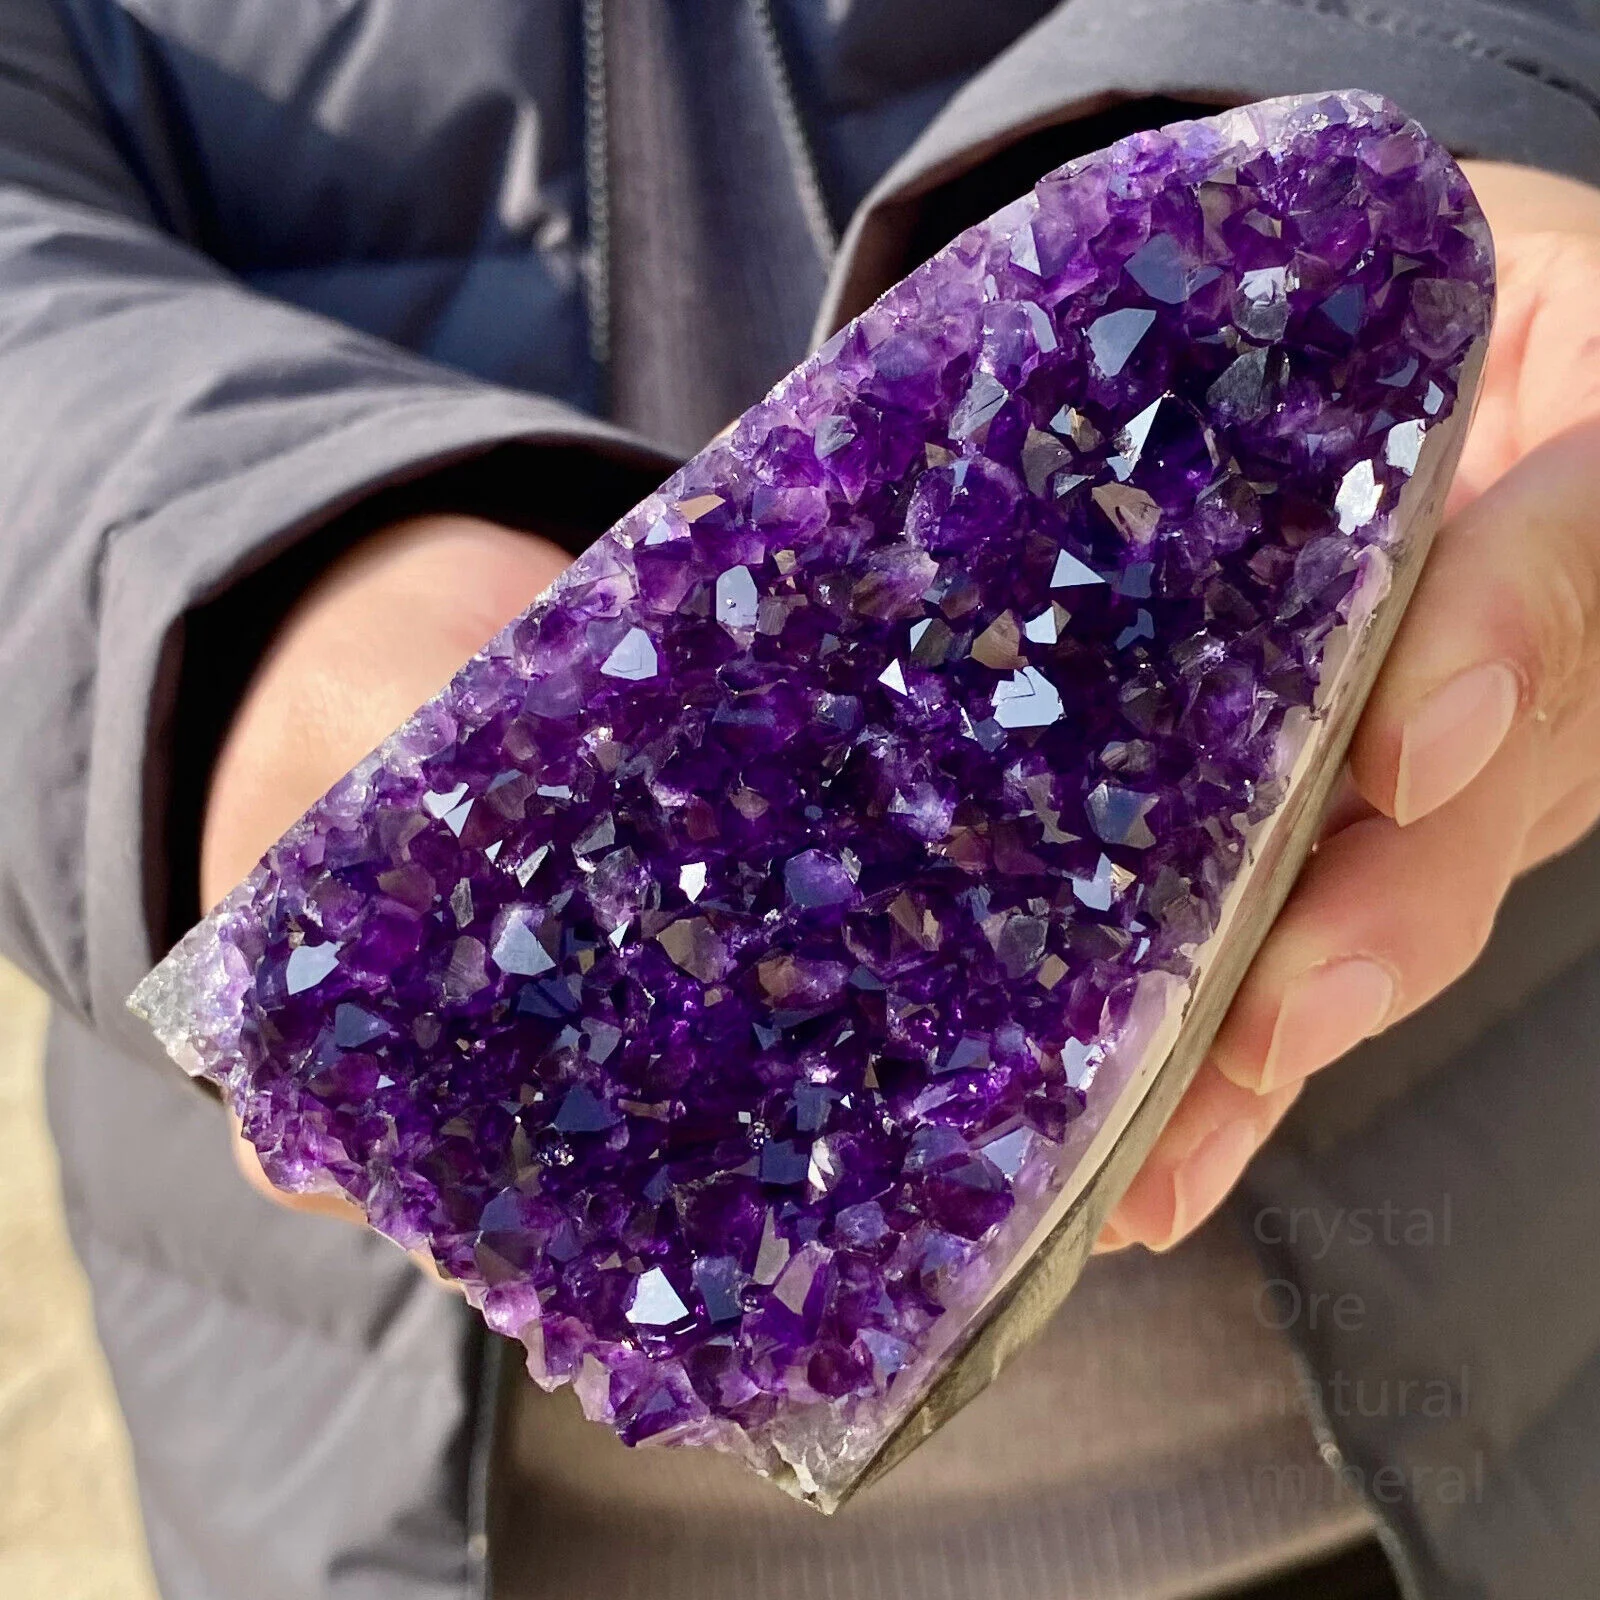 

Натуральный Уругвайский фиолетовый кристалл, искусственный минеральный образец, лечение рейки, демагнитизация дома, декоративный драгоценный камень для медитации